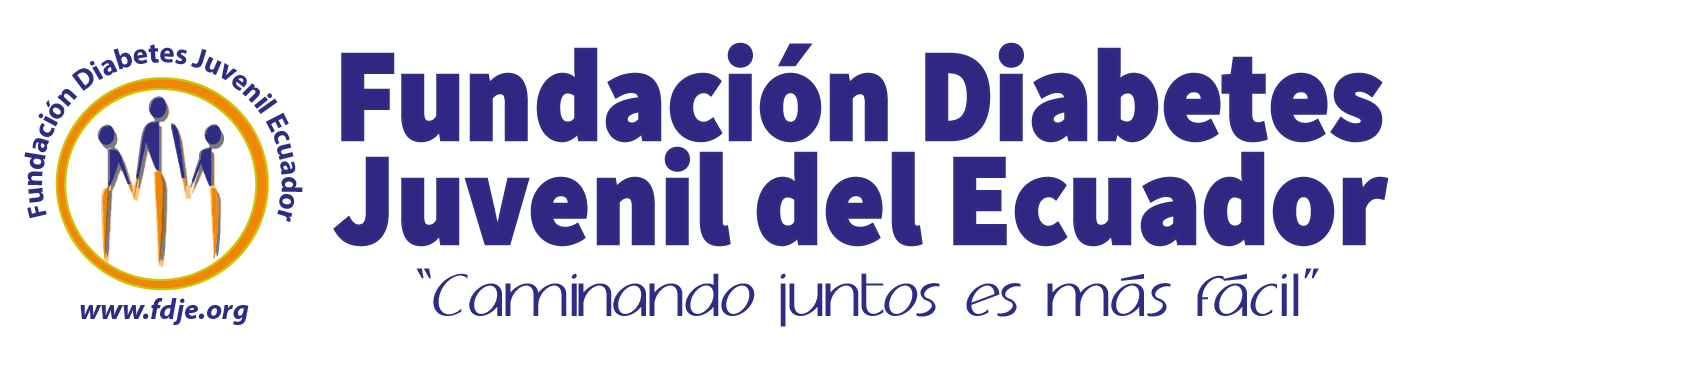 Fundación Diabetes Juvenil del Ecuador